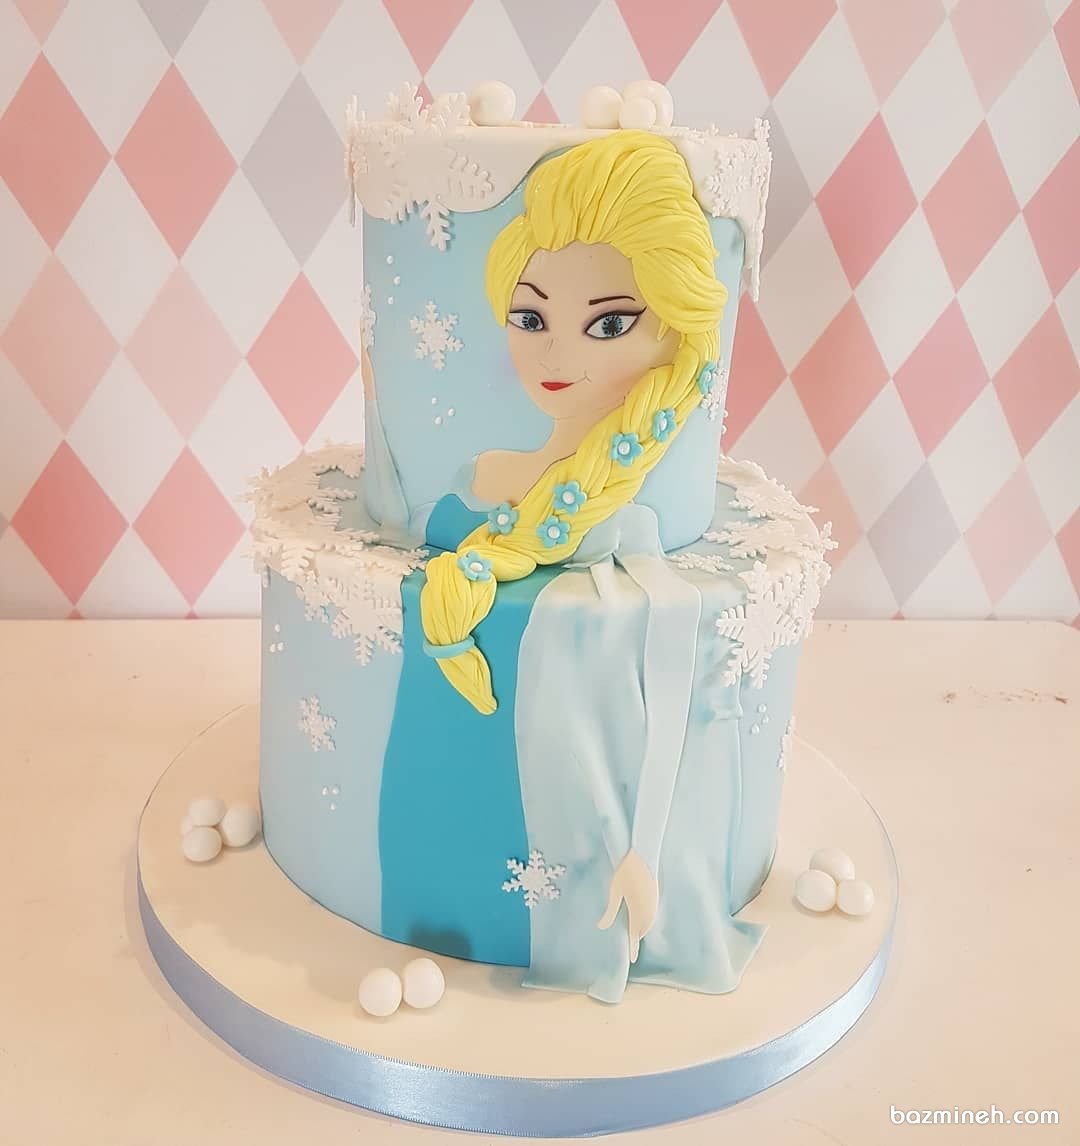 مدل کیک دو طبقه جشن تولد دخترونه با تم پرنسس فروزن (ملکه یخی)